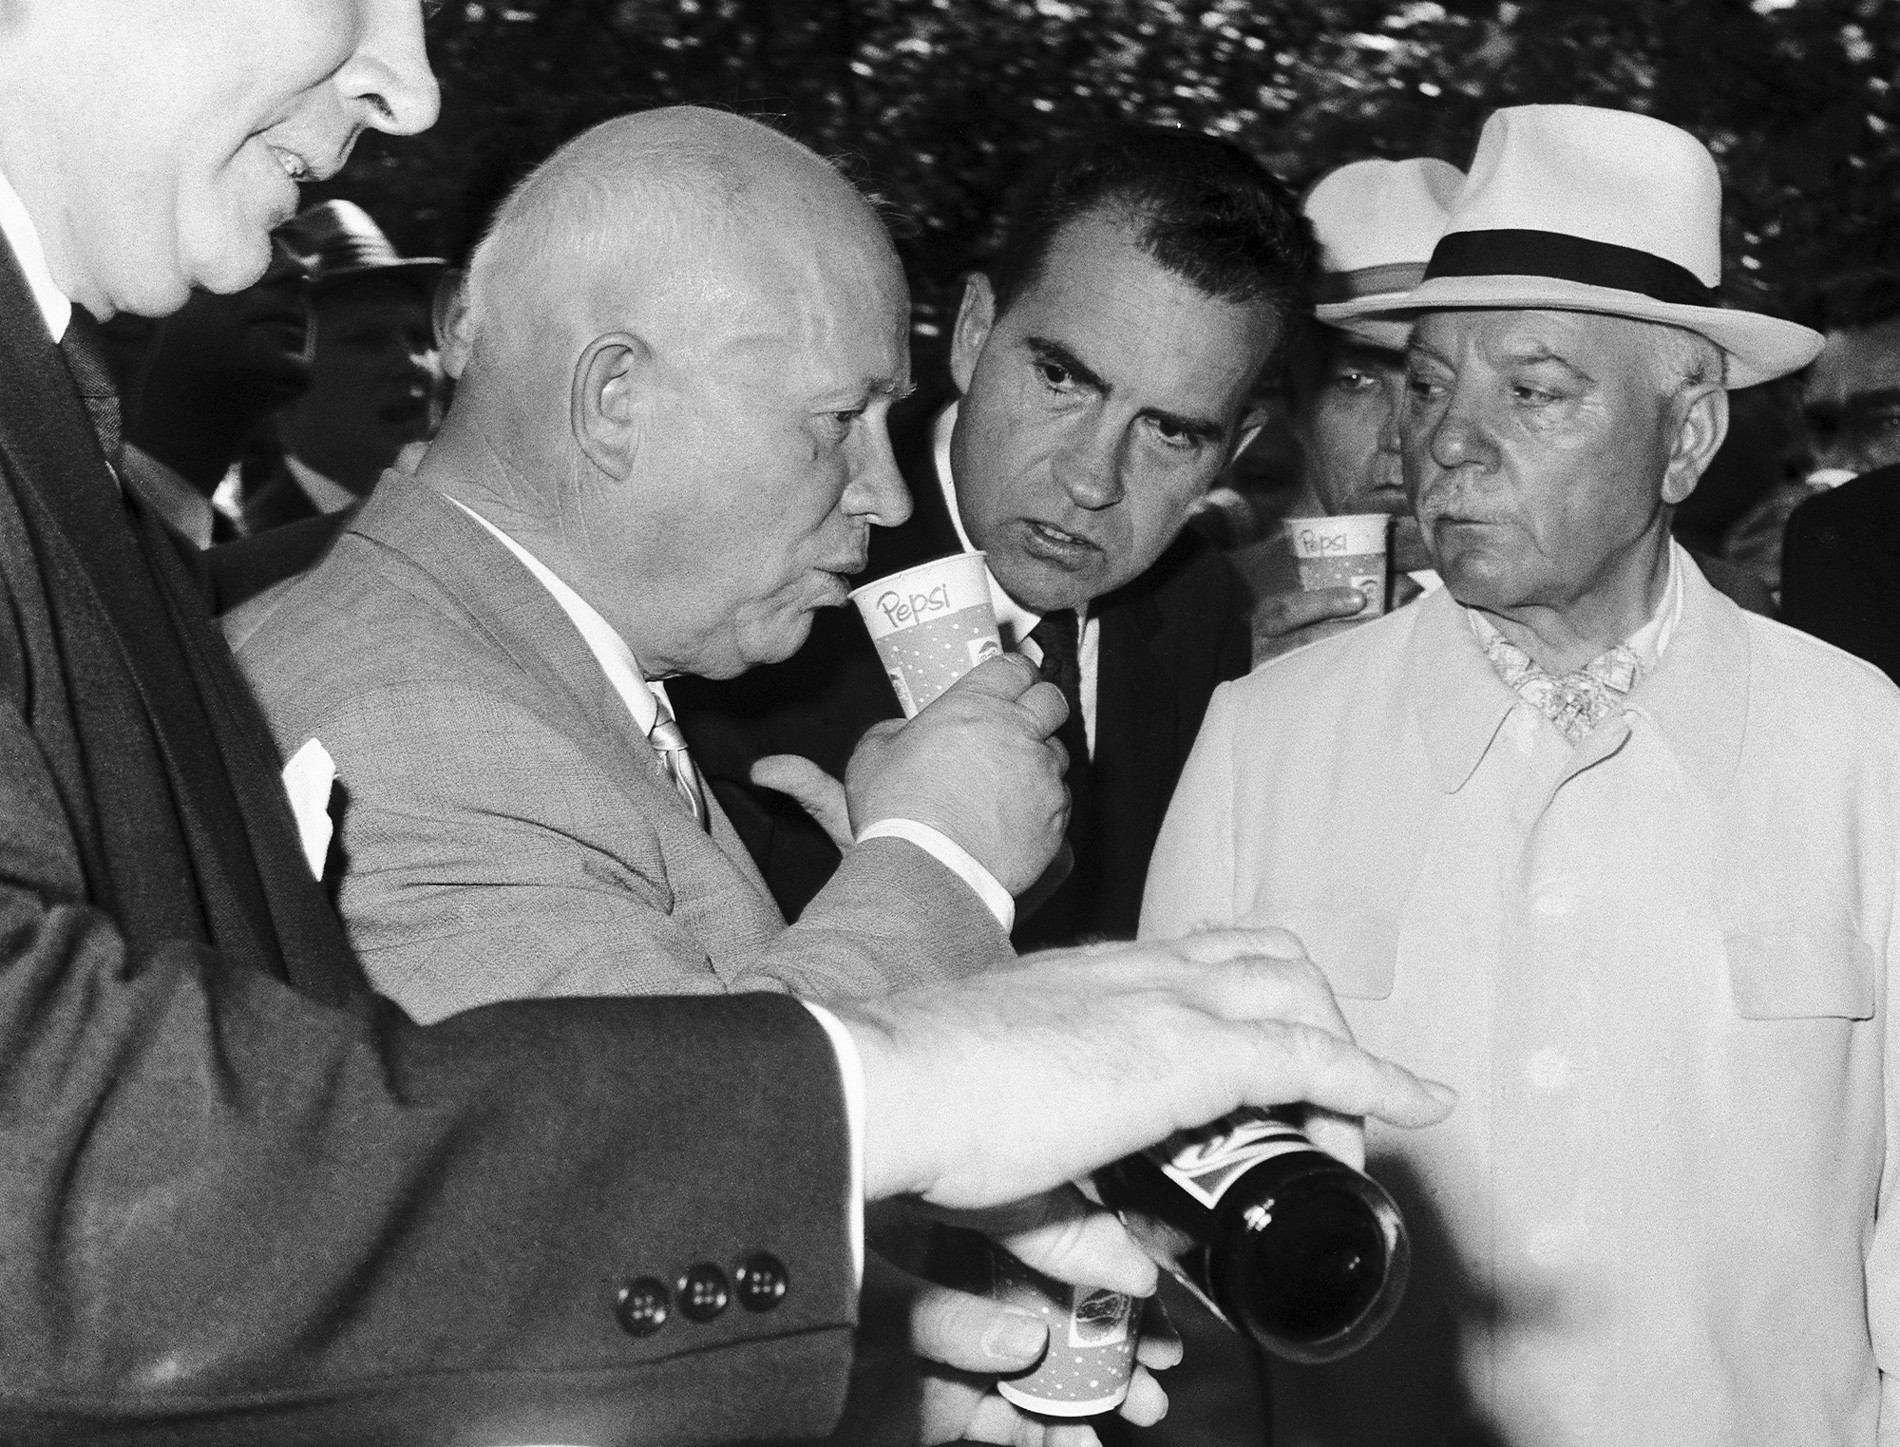 Москва, Советскиот Сојуз. Советскиот премиер Никита Хрушчов испива Пепси кола под будното око на претседателот на САД Ричард Никсон (во центарот) и претседателот на СССР Климент Ворошилов (десно) во паркот „Сокољники“ на 24 јули 1959 година.